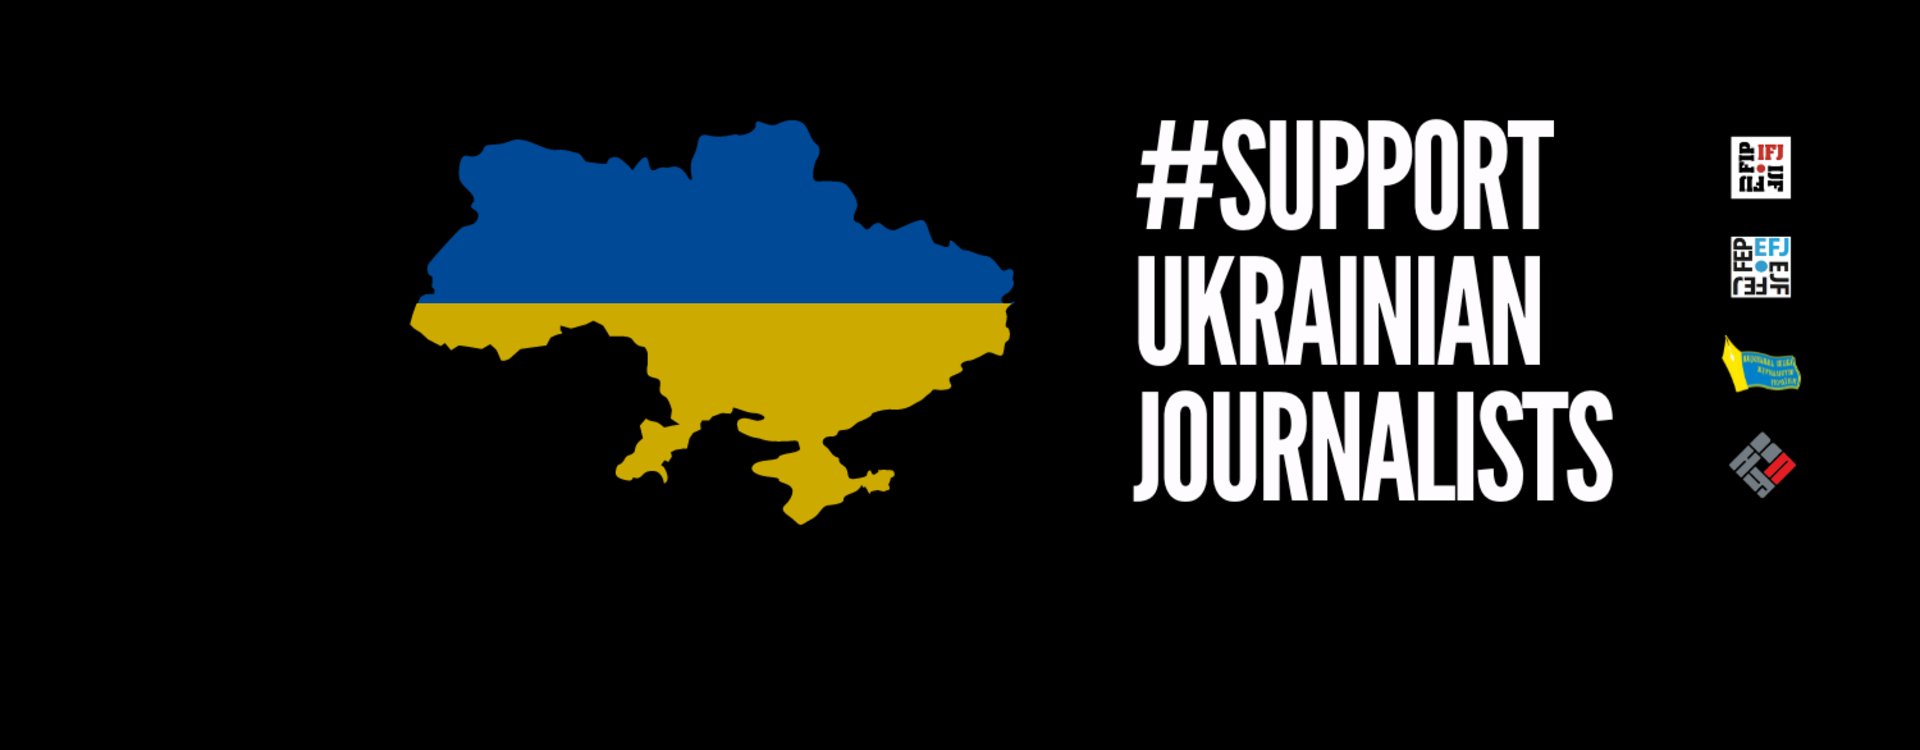 Les journalistes en Ukraine ont besoin de notre solidarité